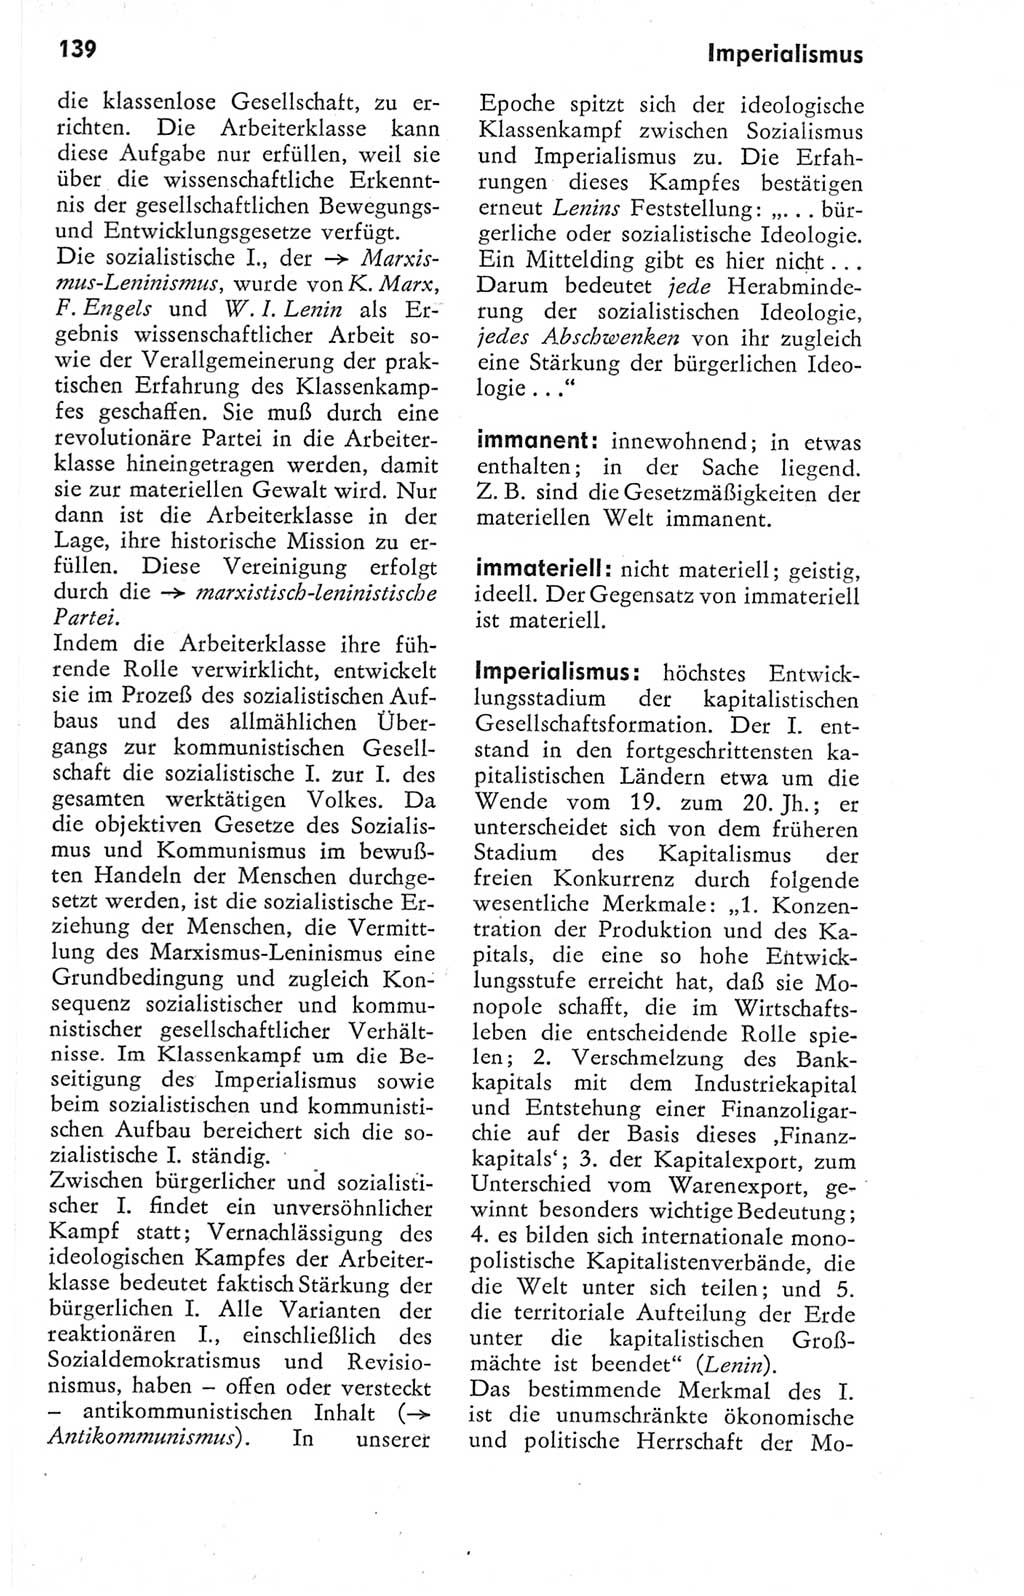 Kleines Wörterbuch der marxistisch-leninistischen Philosophie [Deutsche Demokratische Republik (DDR)] 1974, Seite 139 (Kl. Wb. ML Phil. DDR 1974, S. 139)